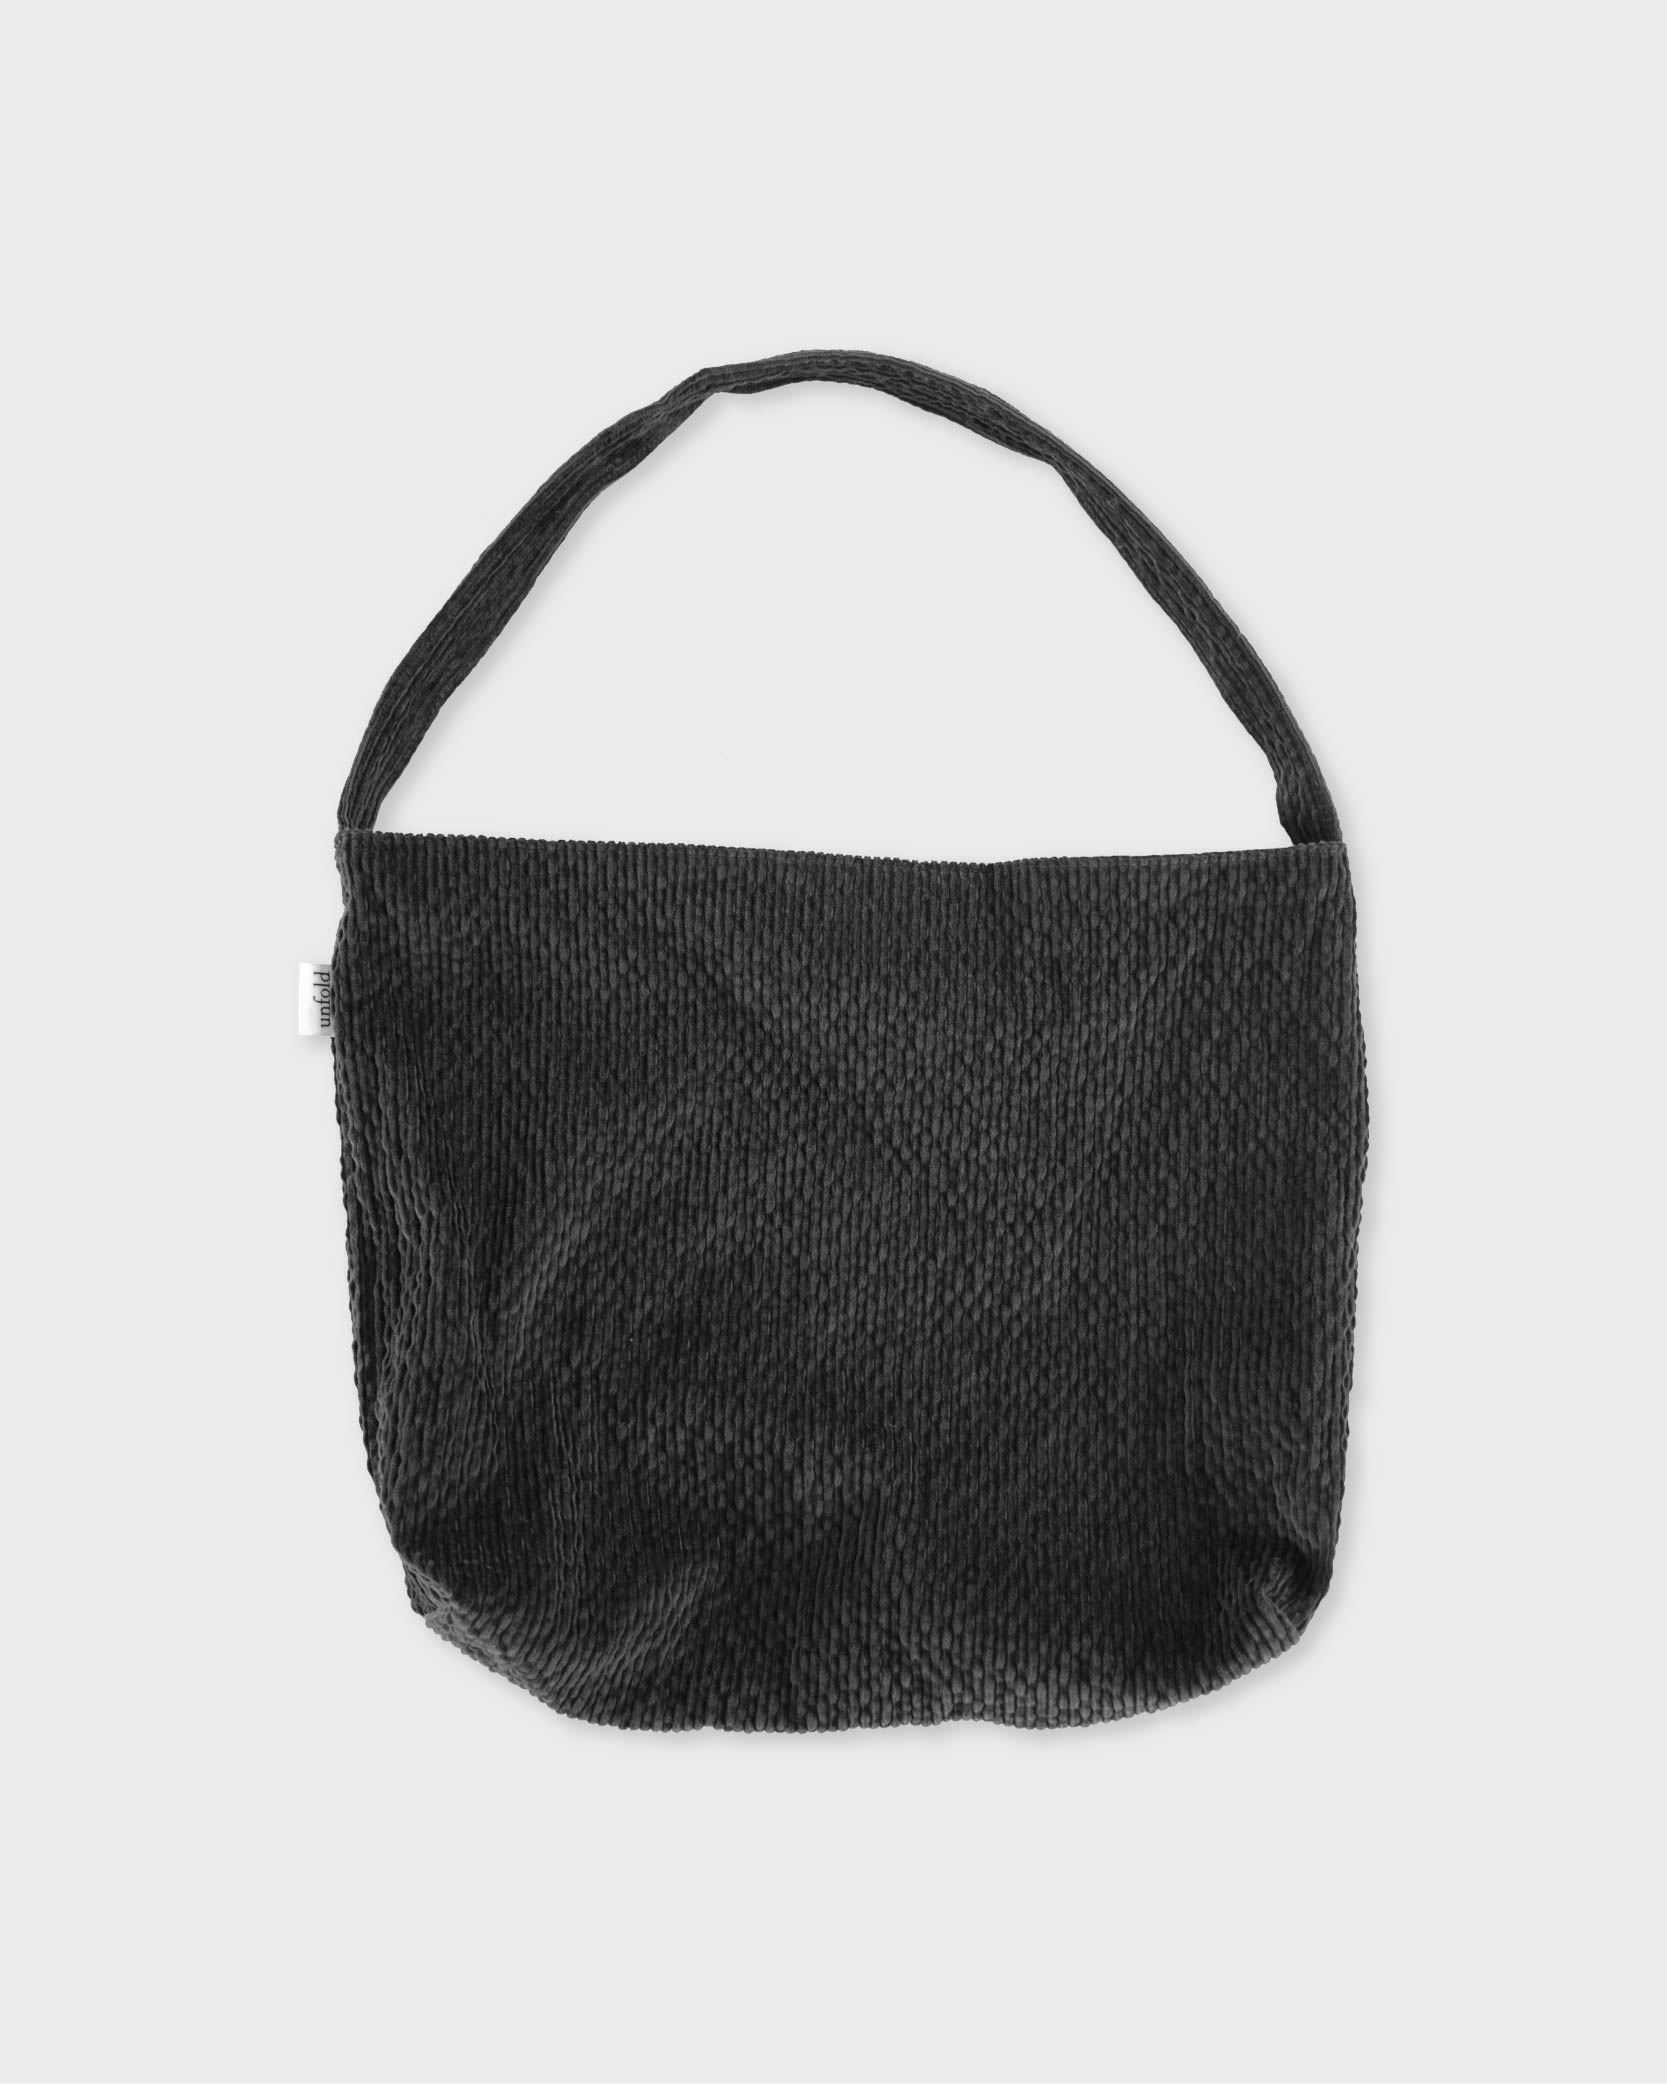 언폴드,unfold,에코백,파우치,천가방,코스터,백팩,스크런치Corduroy shoulder bag (charcoal)